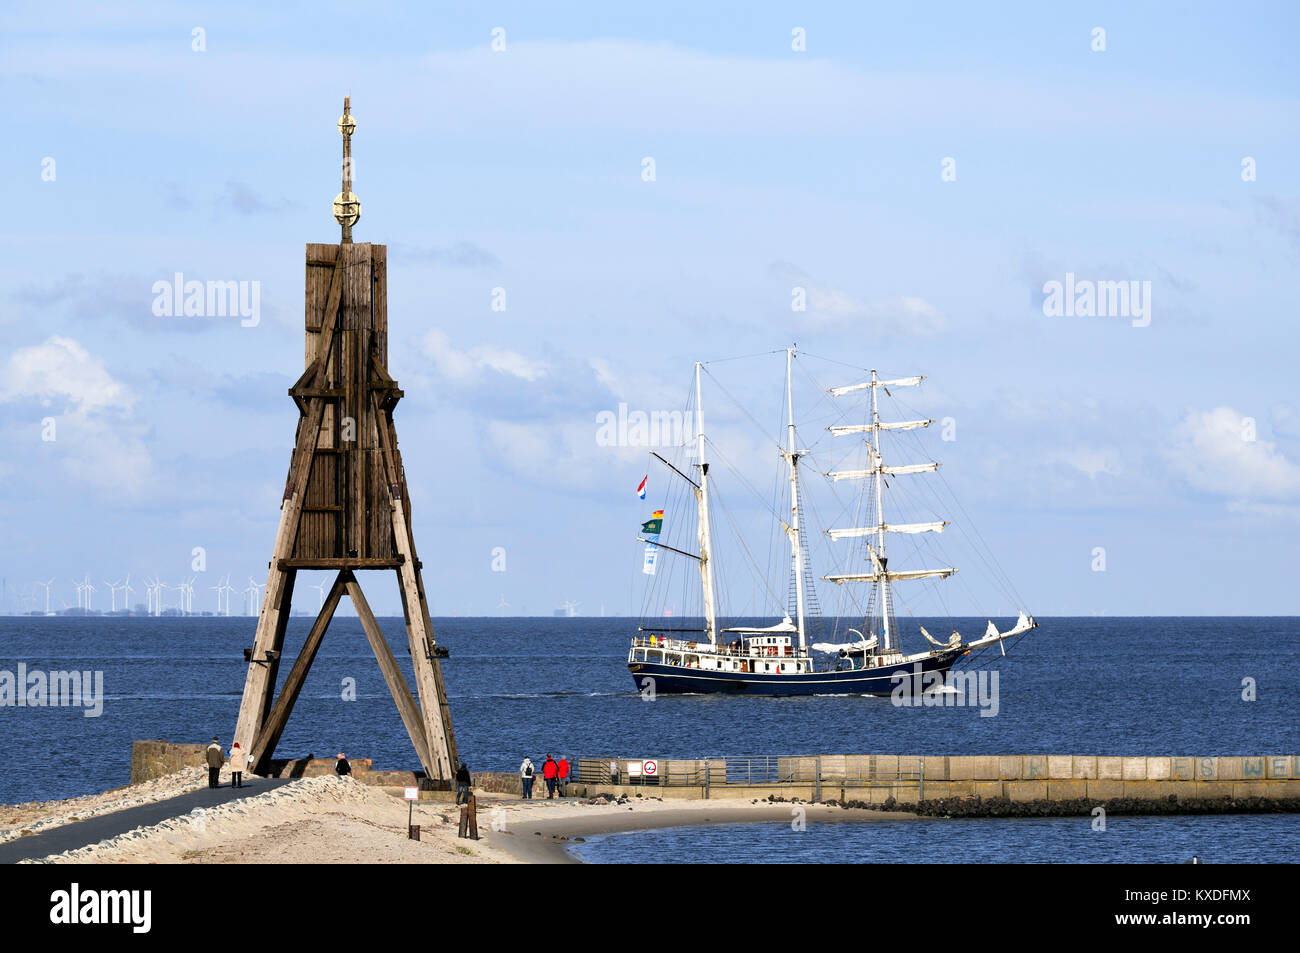 Kugelbake con nave a vela sull'Elba,bocca dell'Elba nel Mare del Nord,punto di riferimento della città di Cuxhaven,Bassa Sassonia Foto Stock